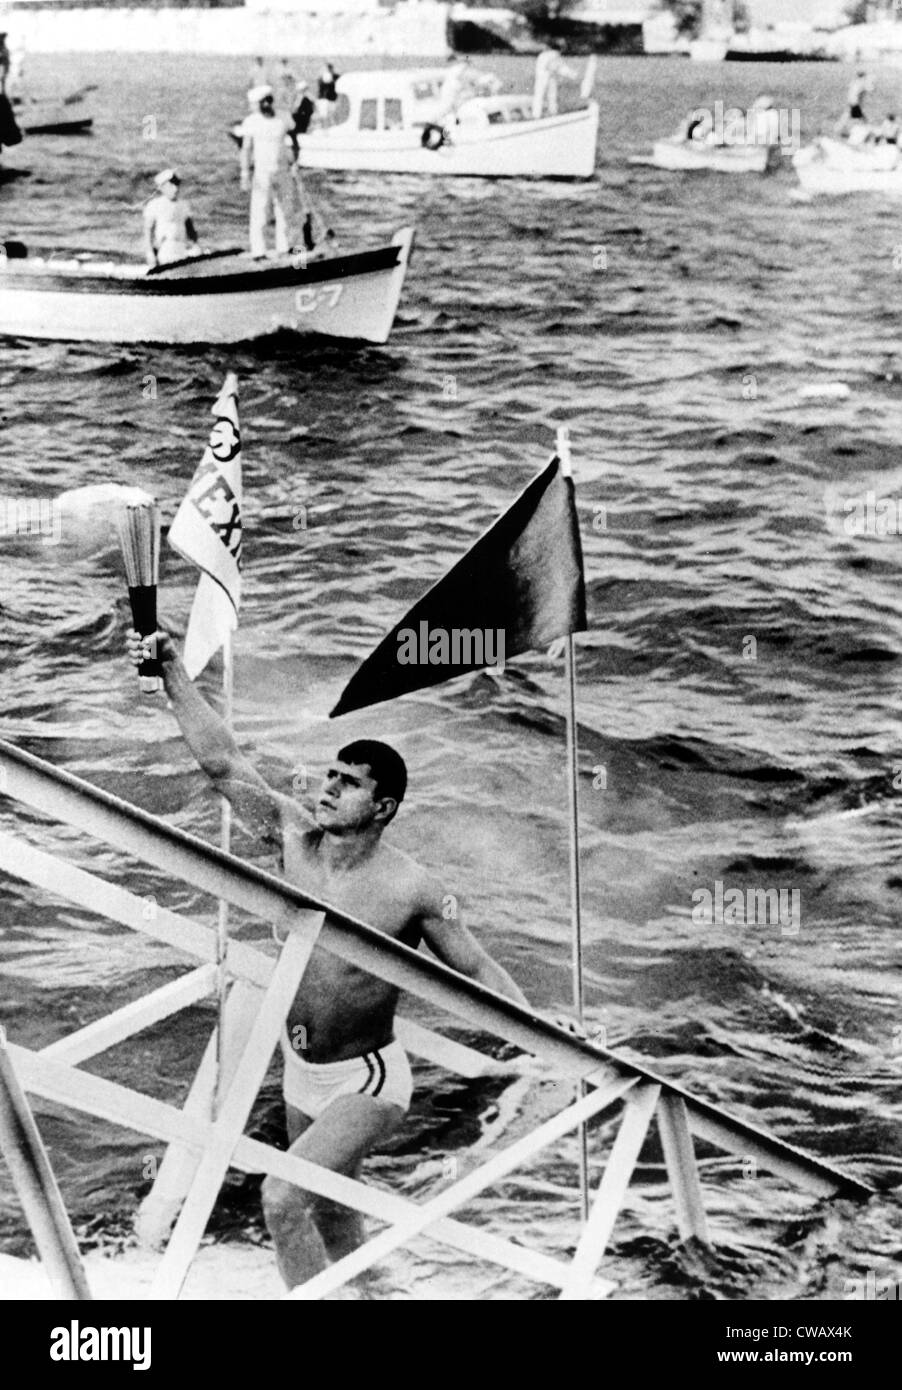 1968 Olimpiadi, la Torcia Olimpica raggiunge il suolo messicano, Veracruz, Messico, 10-06-1968.. La cortesia: CSU Archivi / Everett Collection Foto Stock